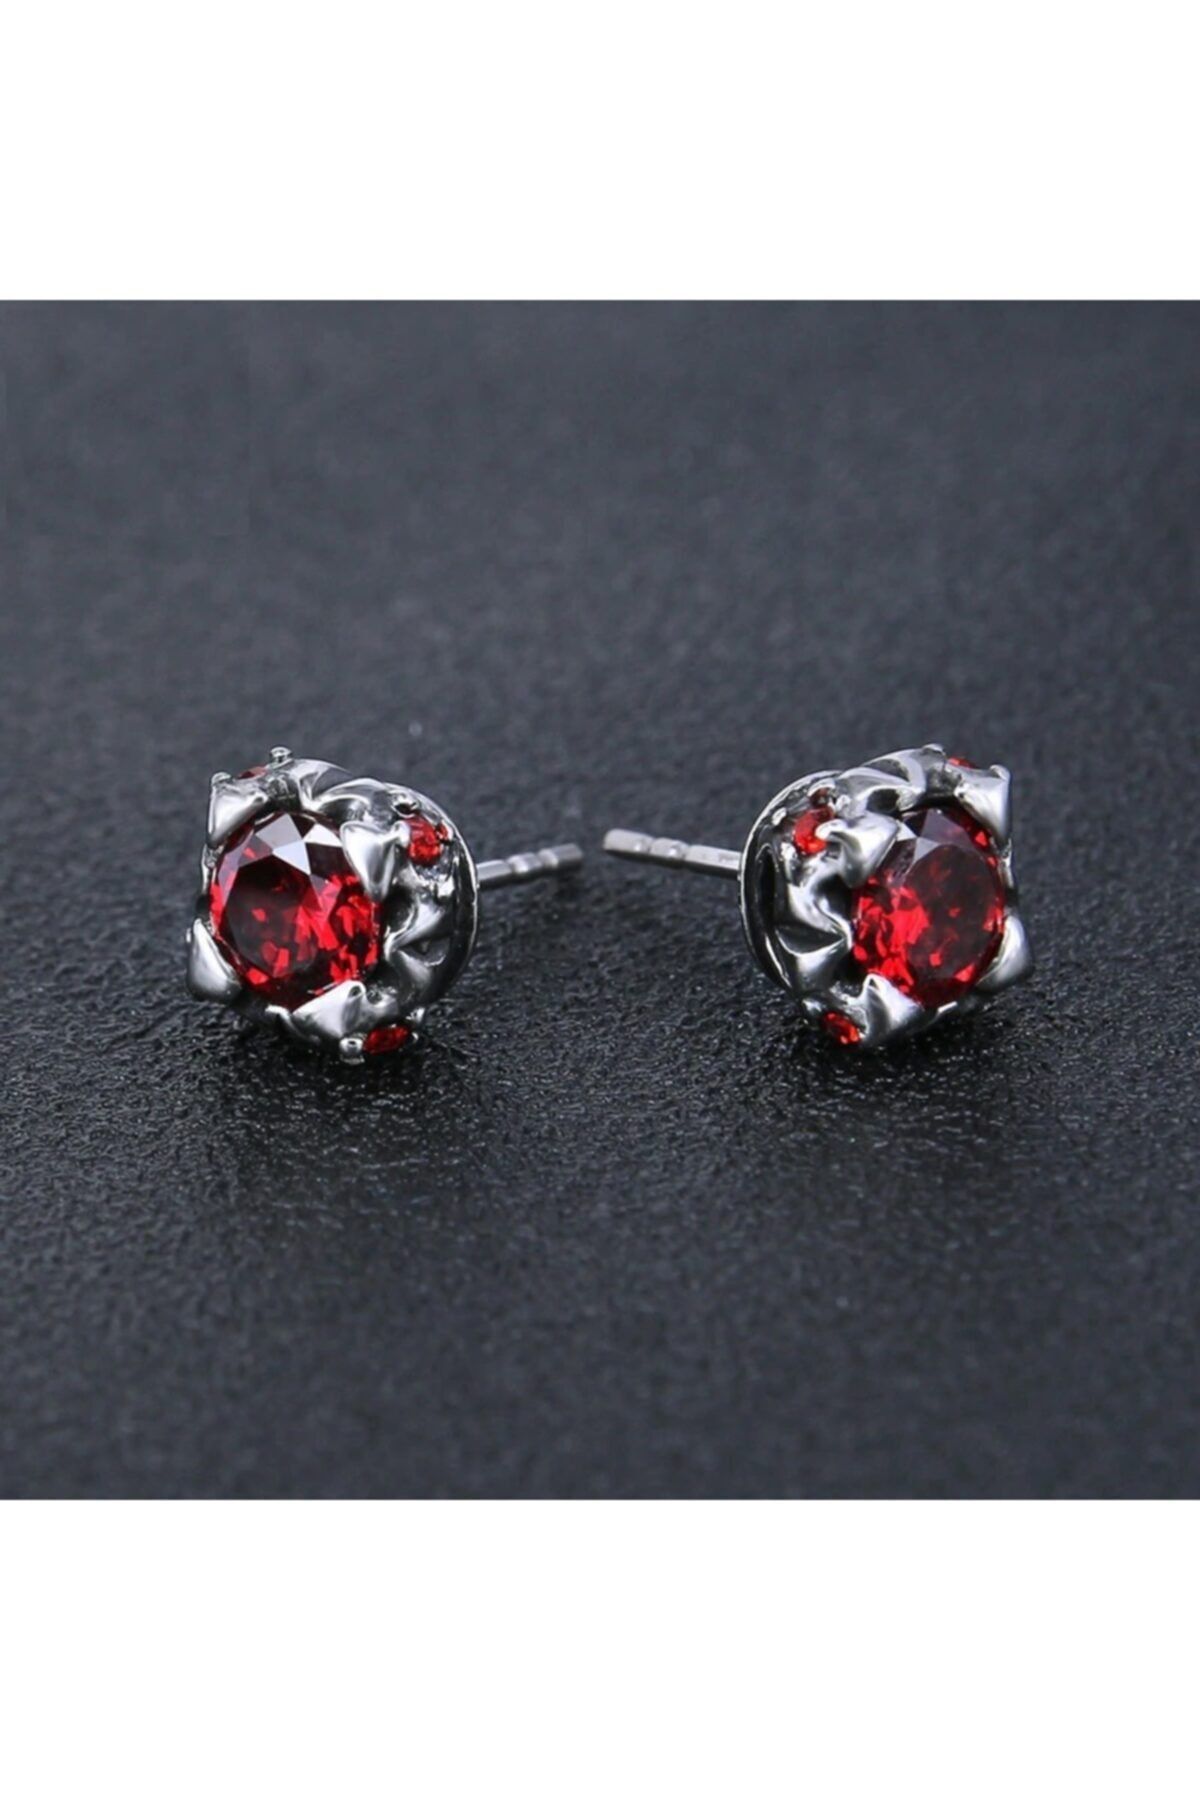 Men Women 925 Sterling Silver Red Round Stud Post Earring A1295 | eBay